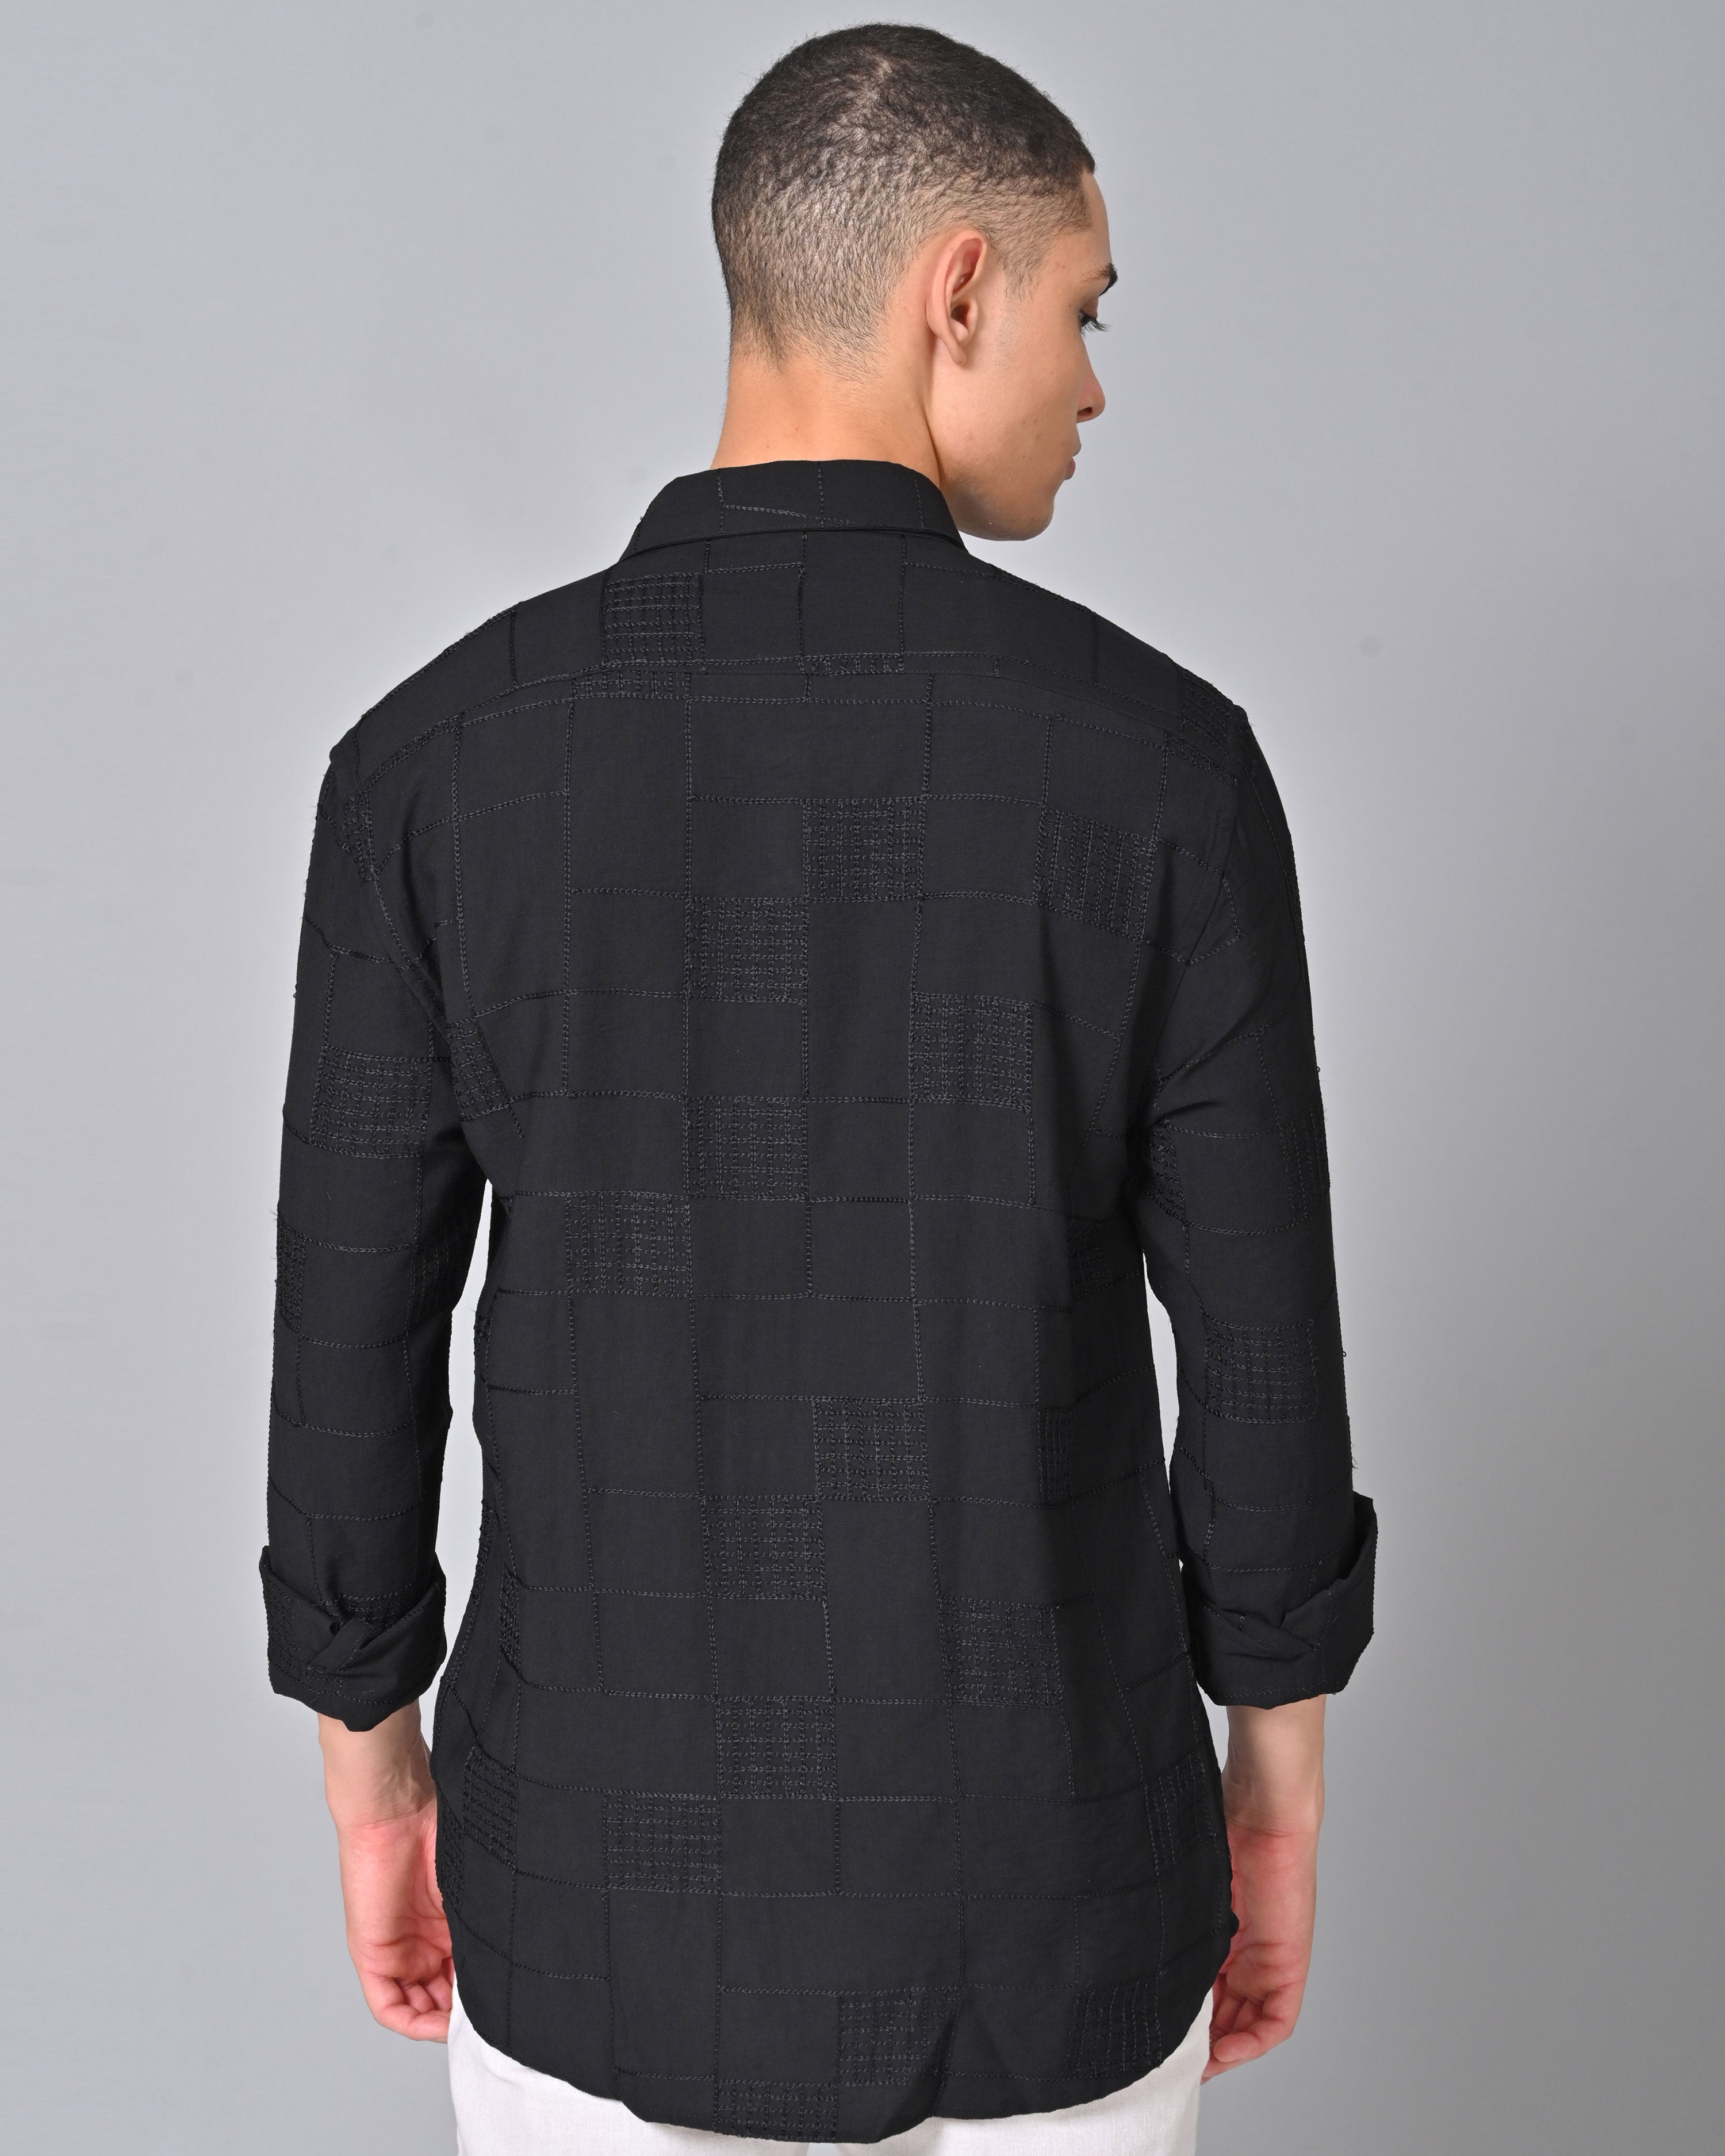 Men's Embroidered Full Sleeve Black Shirt